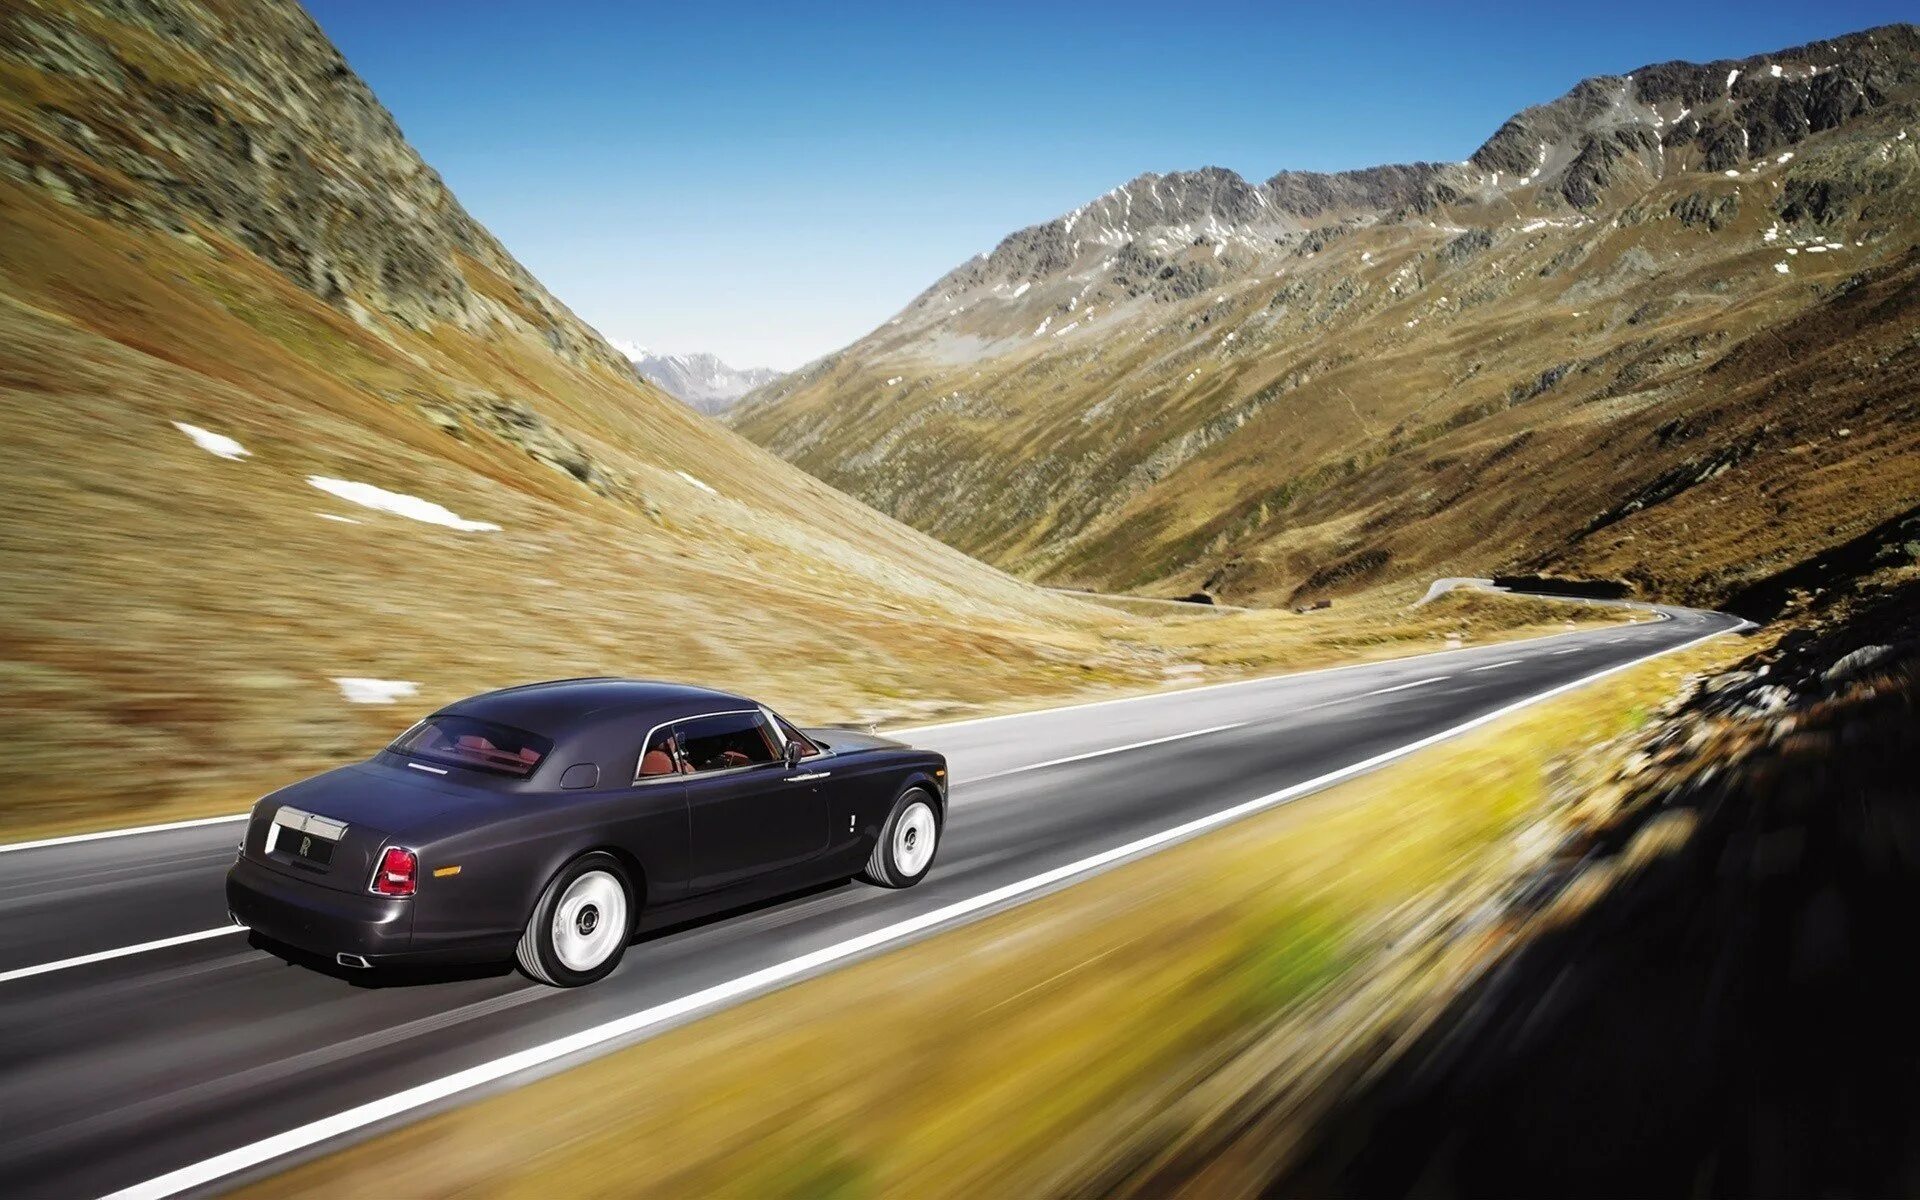 Видео машинка едет. Rolls Royce Phantom 2008. Автомобиль в горах. Автомобиль на фоне гор. Машина едет по дороге.